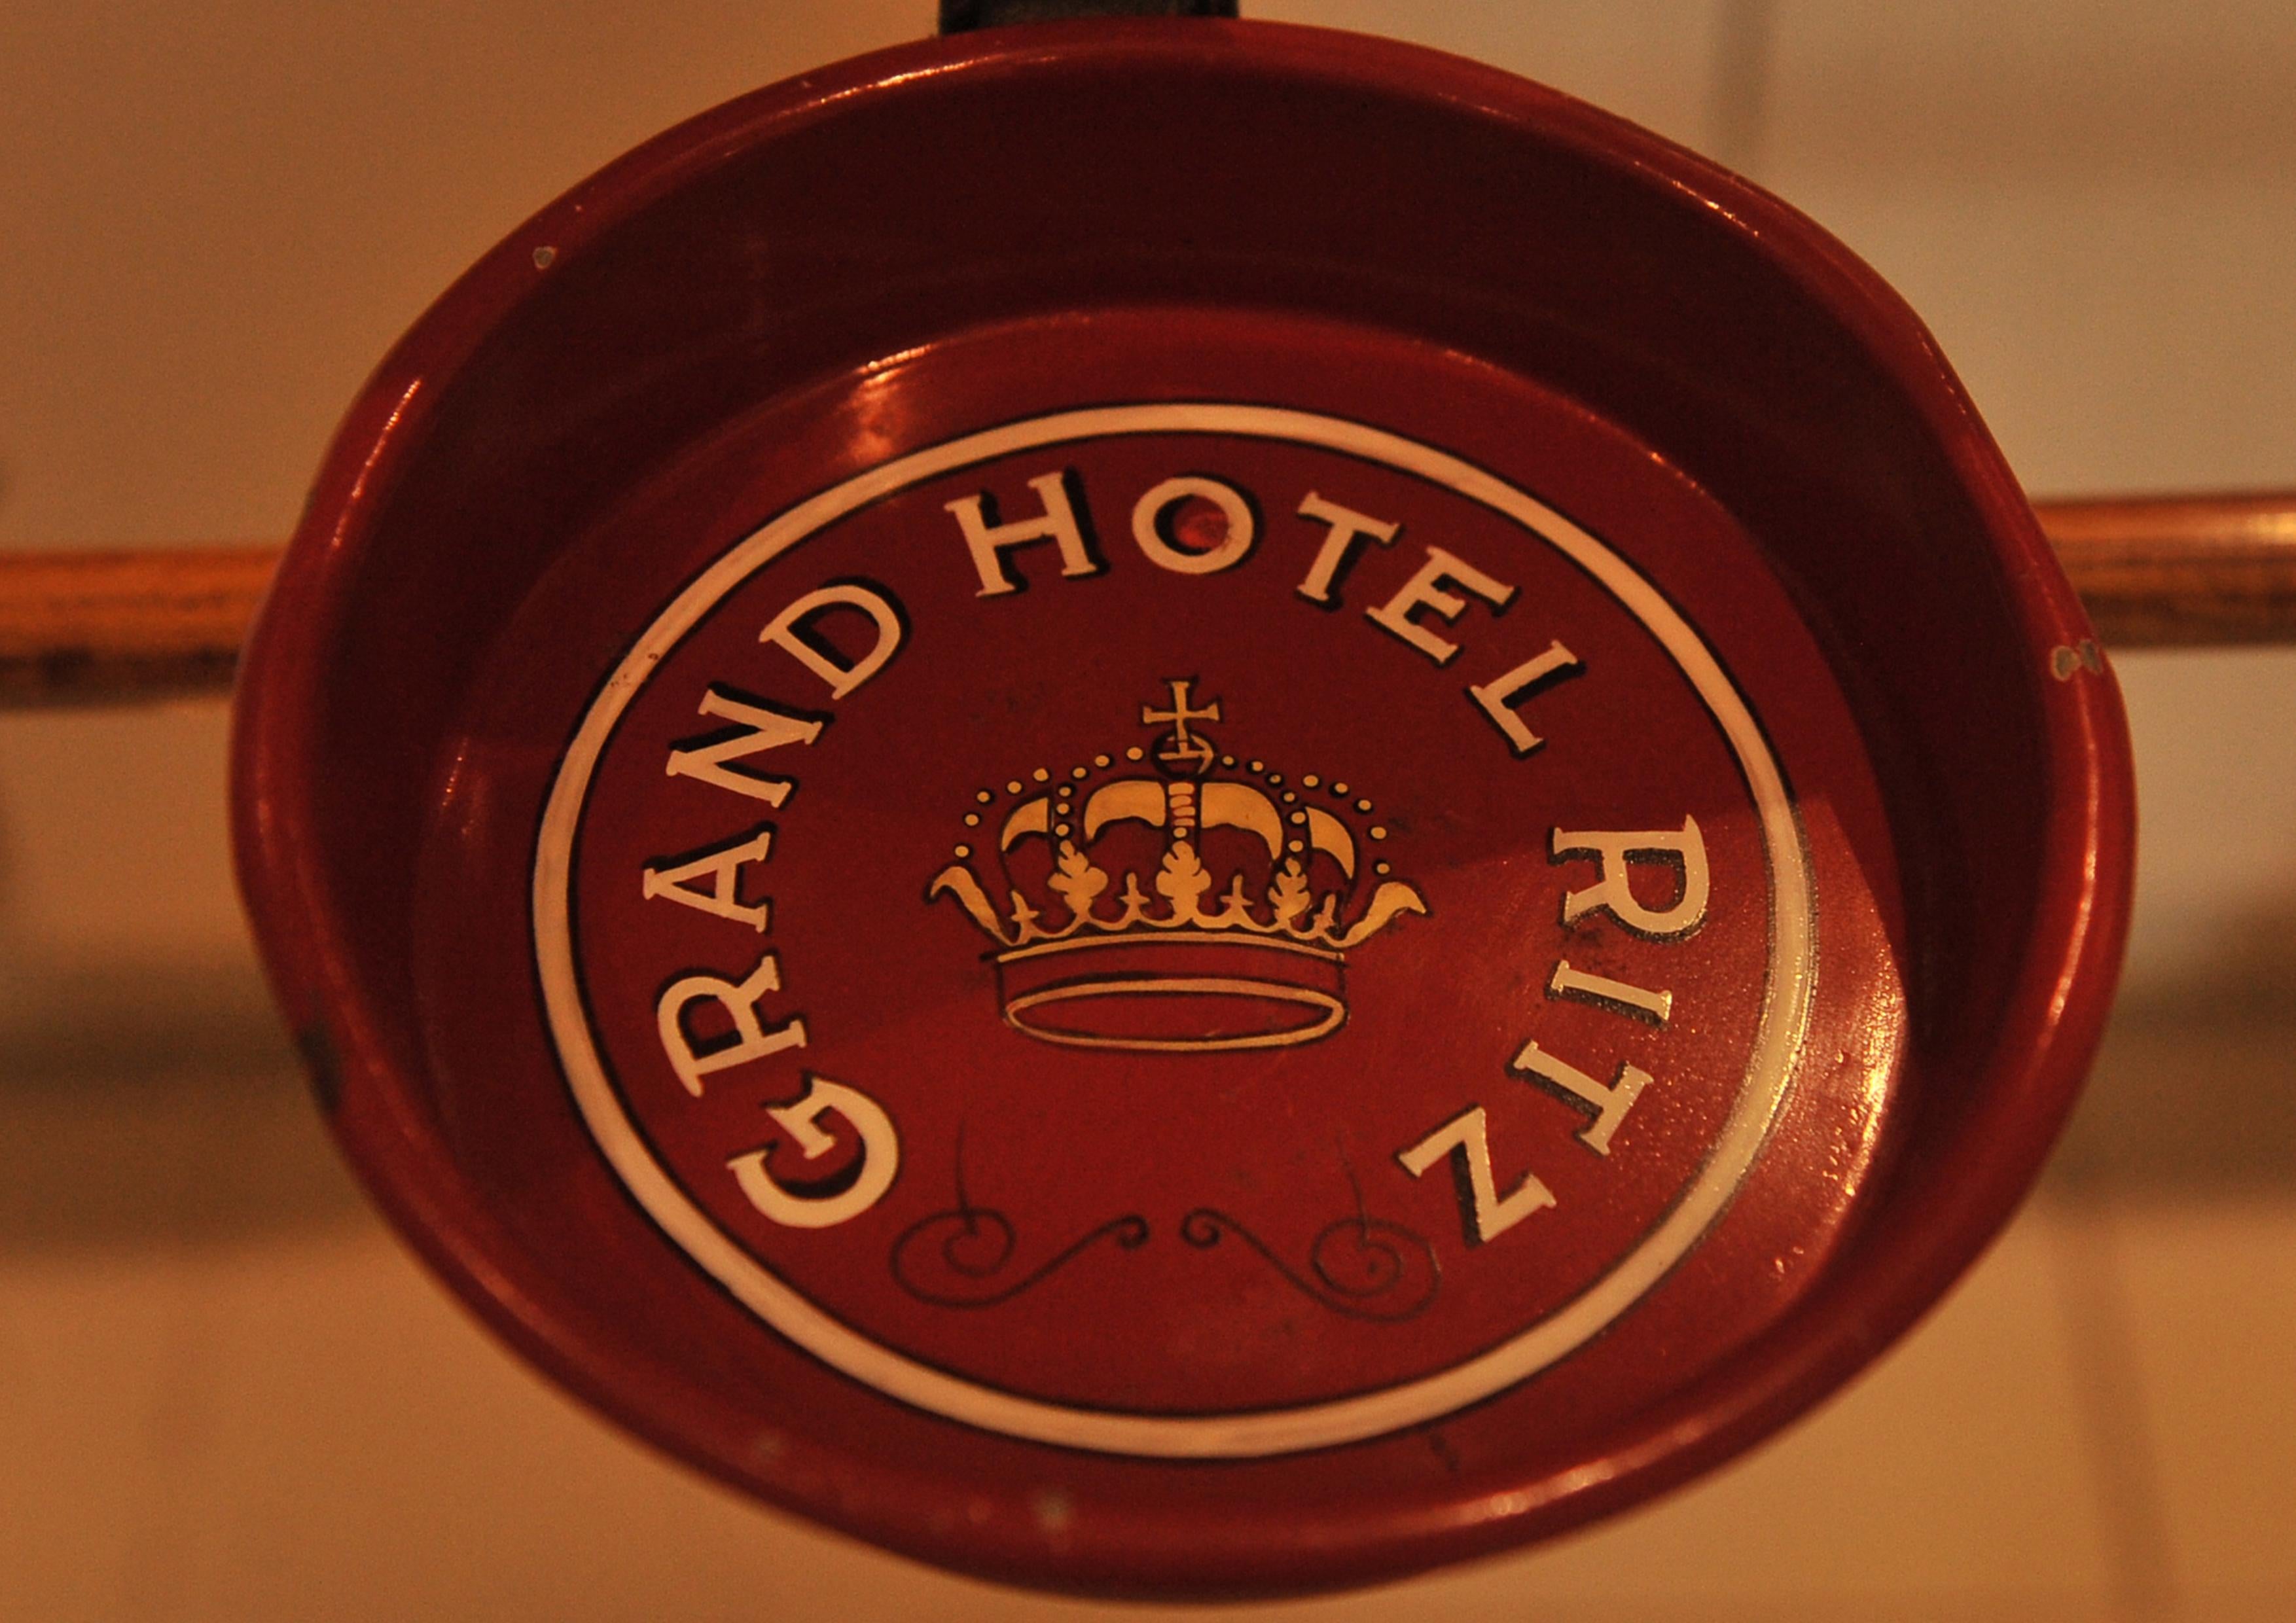 1920's Rare Art Deco Grand Ritz Hotel Bambus & Holz Valet Stand

Als César Ritz 1894 das Grand Hotel in Rom eröffnete, wurde das Haus schnell zu einem der modernsten und prächtigsten in ganz Italien. 

Der Ständer ähnelt sehr dem Gebr. Thonet Valet